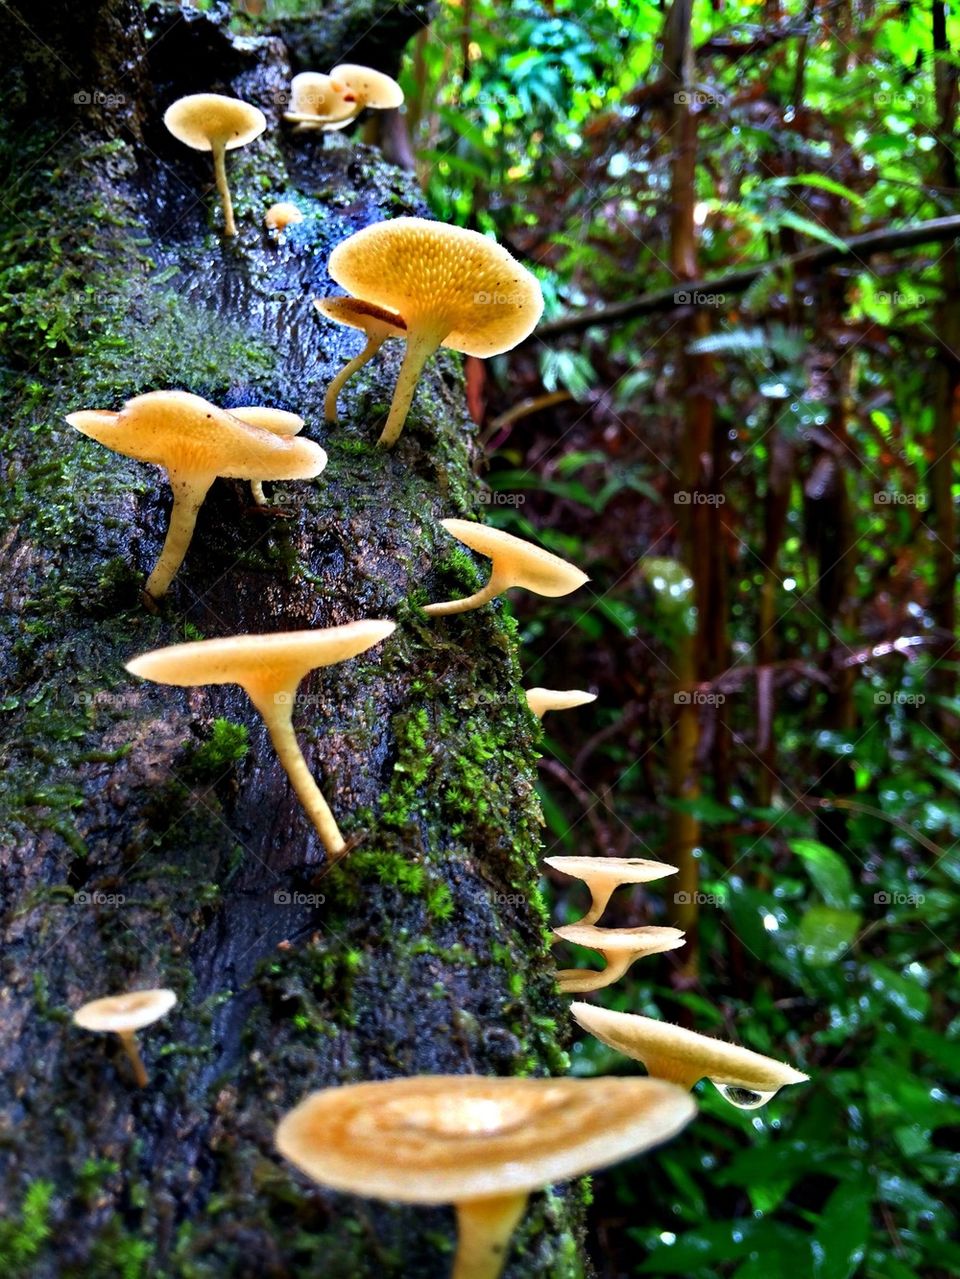 Mushrooms..